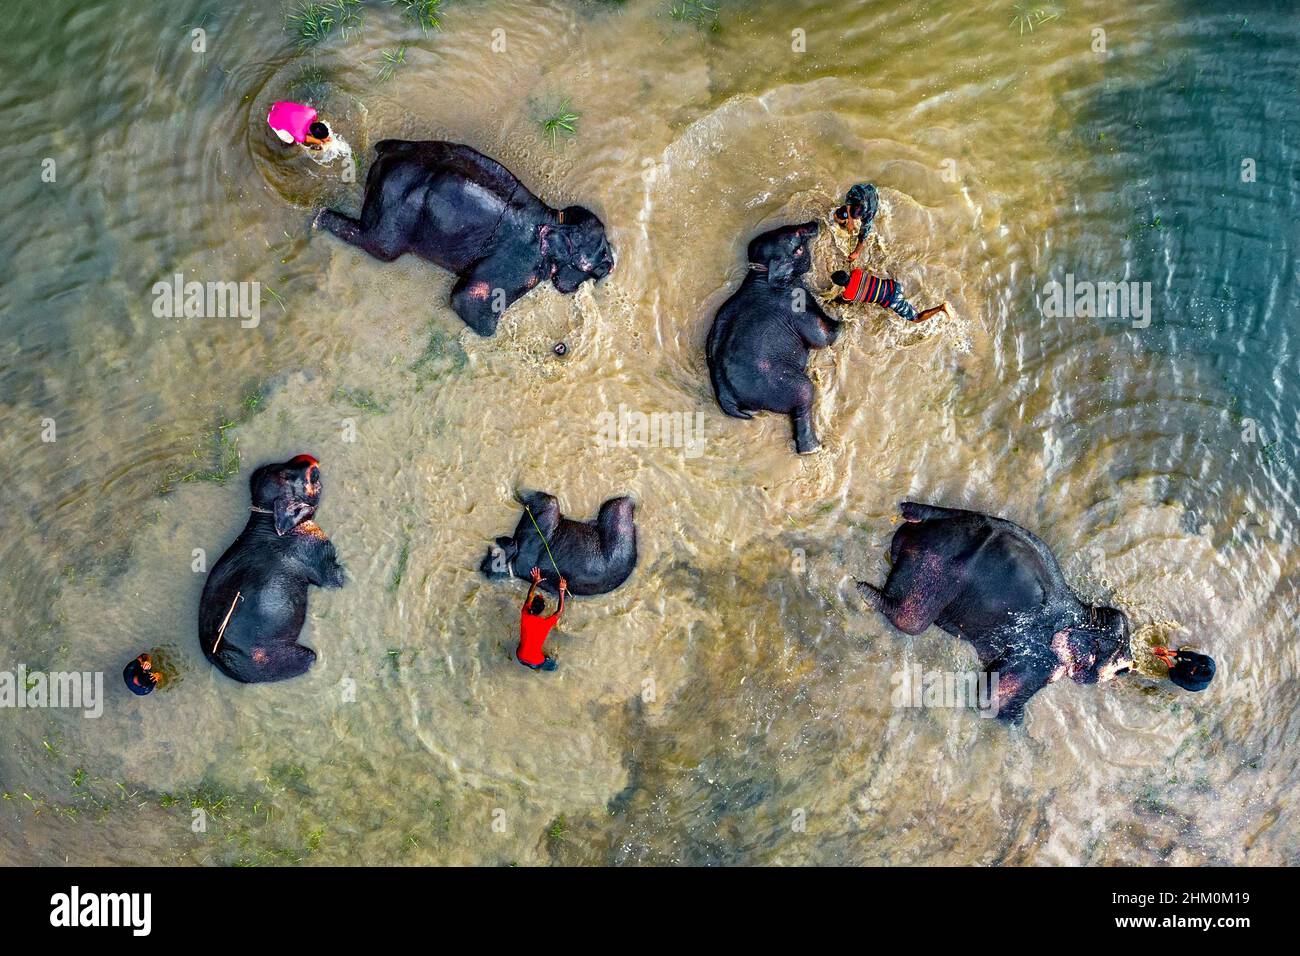 Les éléphants de cirque se baignent dans l'eau de la rivière trouble Banque D'Images